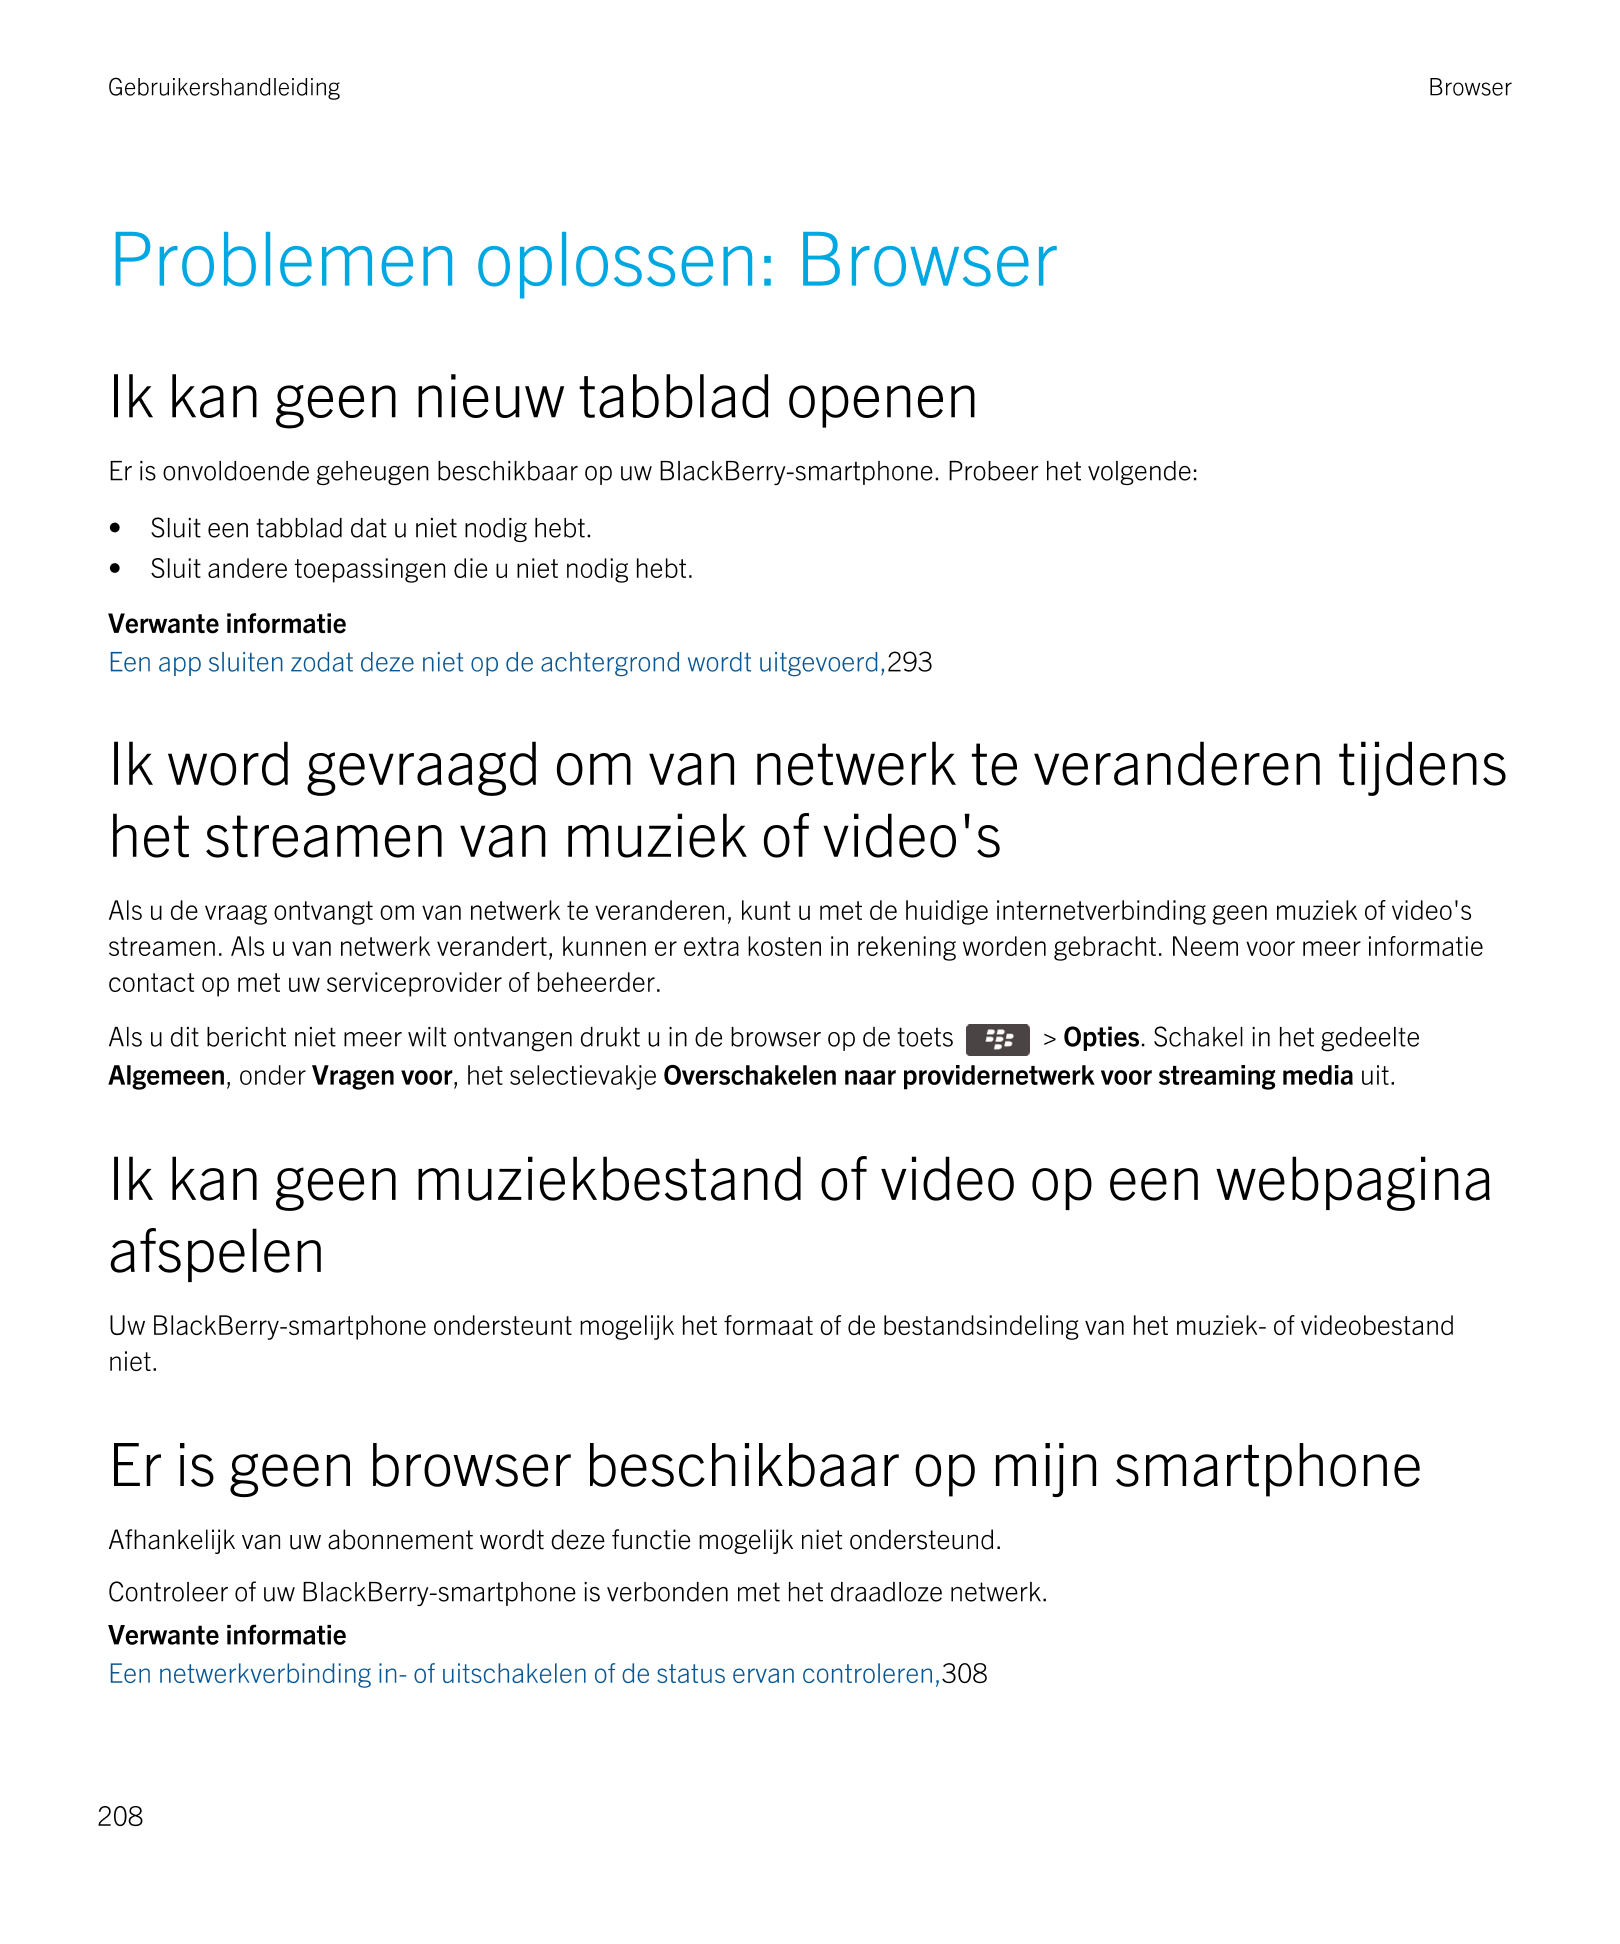 Gebruikershandleiding Browser
Problemen oplossen: Browser
Ik kan geen nieuw tabblad openen
Er is onvoldoende geheugen beschikbaa